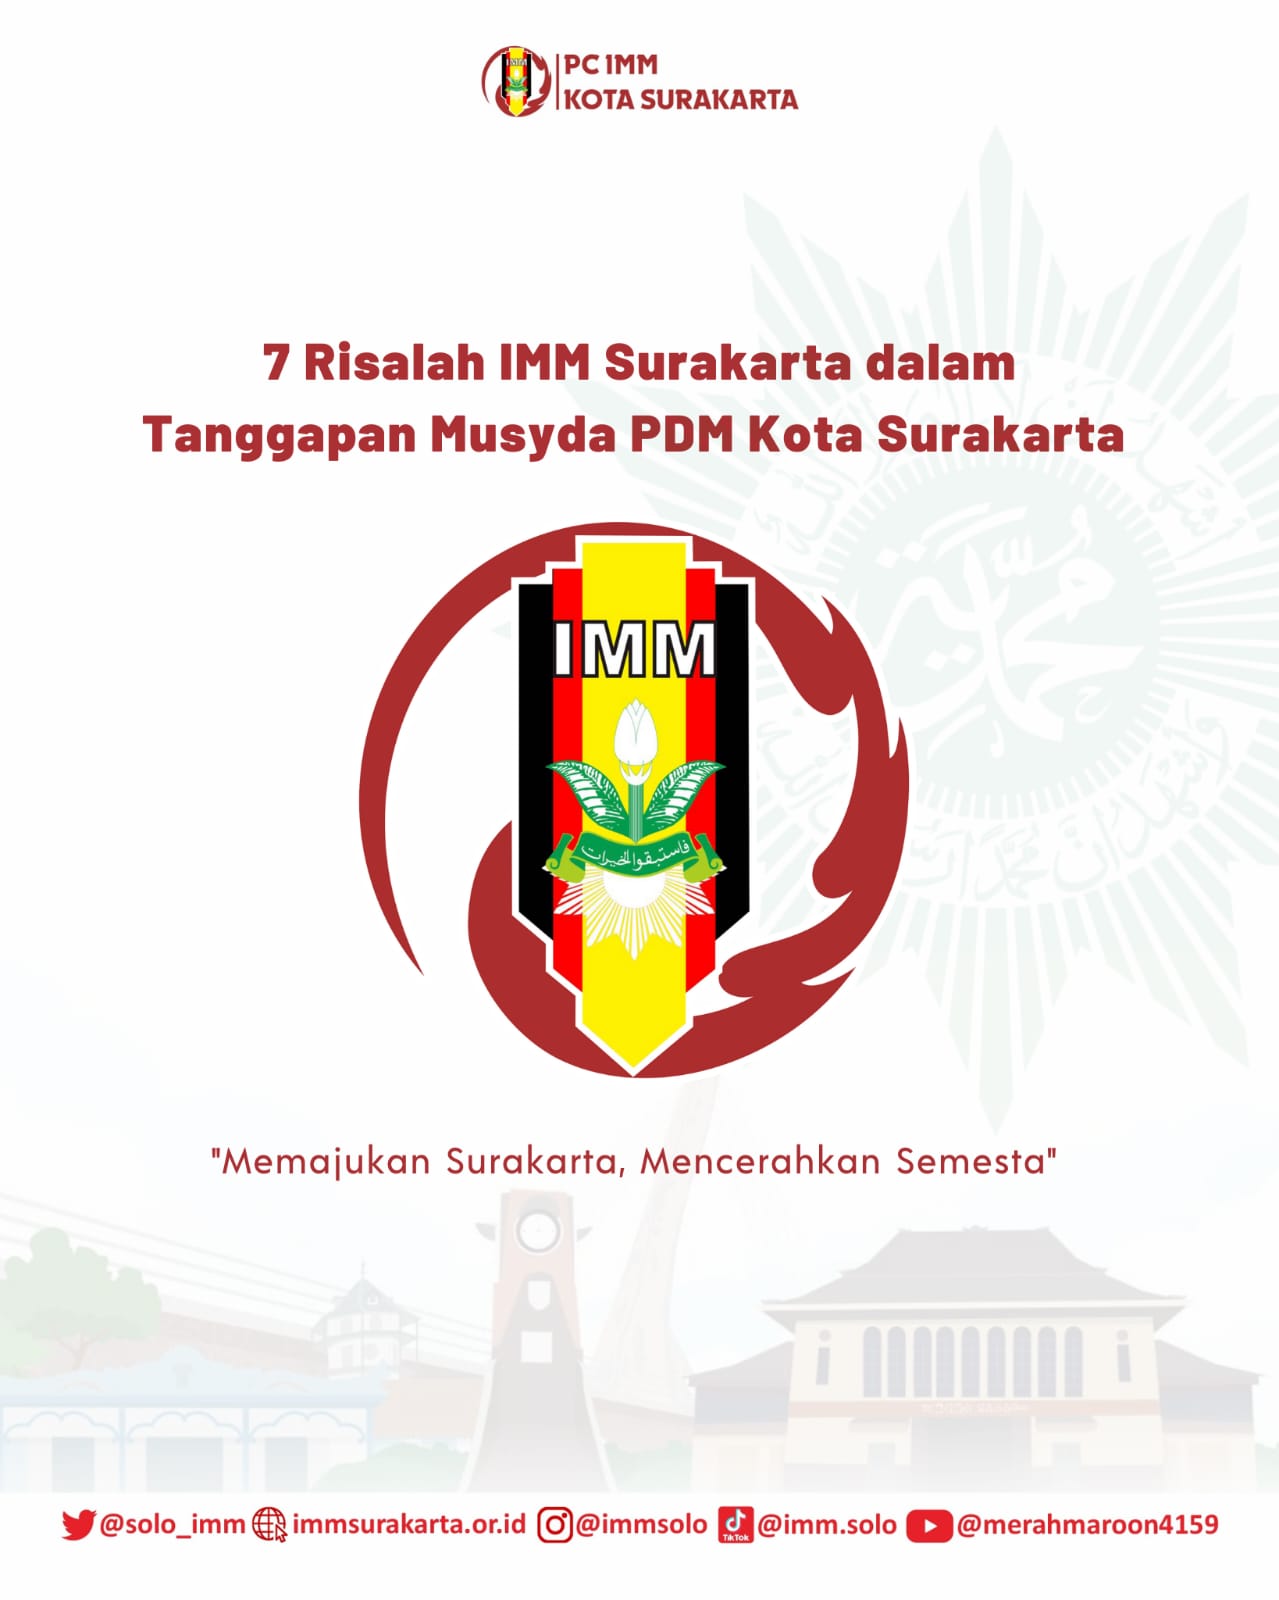 7 Risalah IMM Surakarta dalam tanggapan Musyda Muhammadiyah Solo